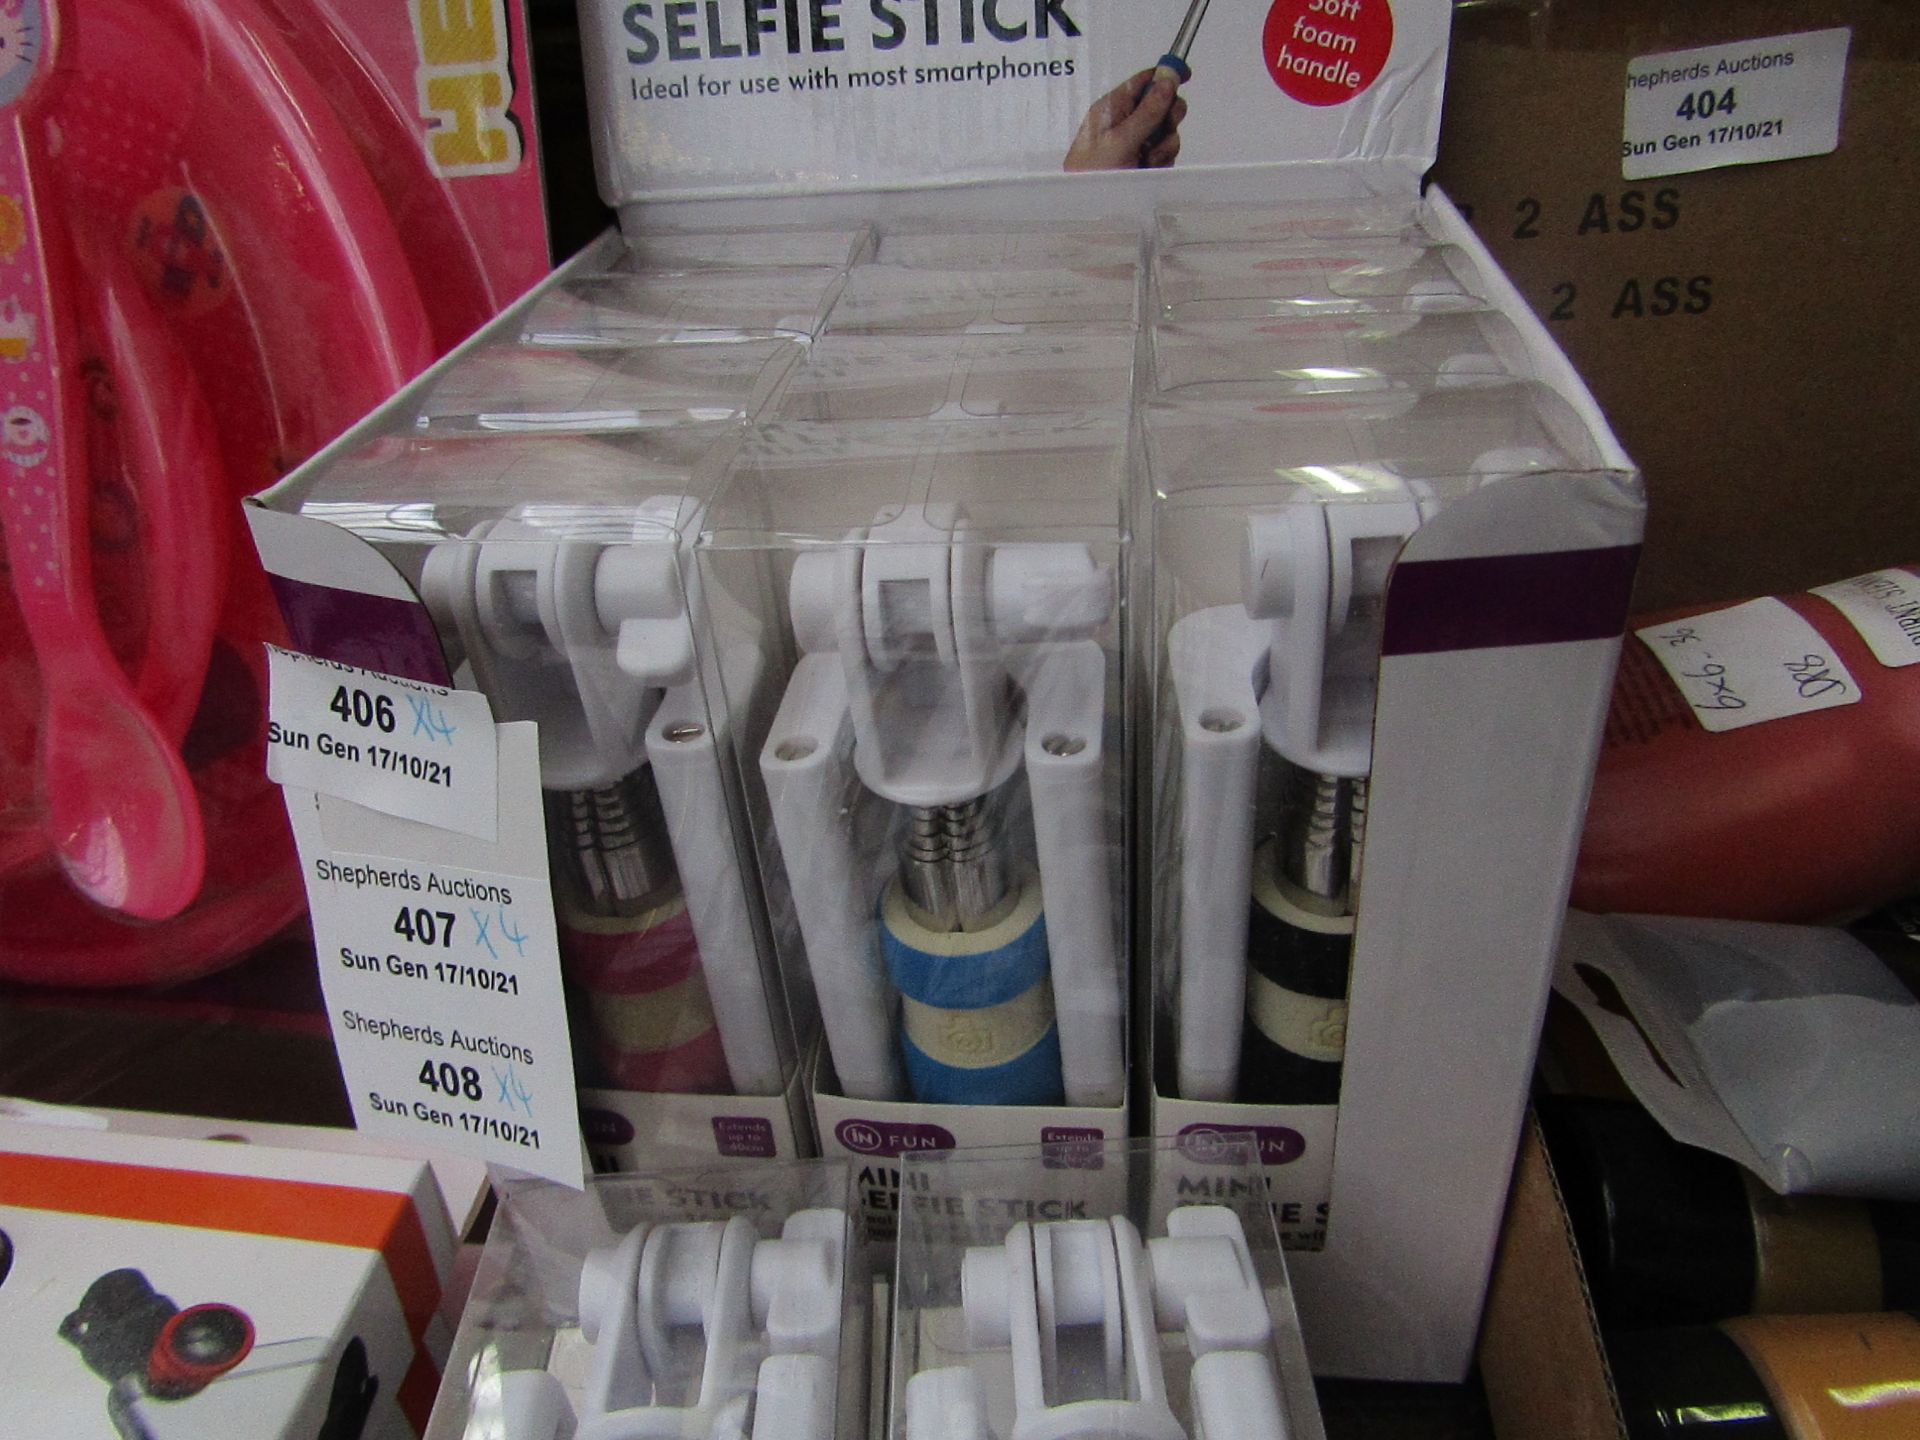 4x mini selfie stick - new & packaged.